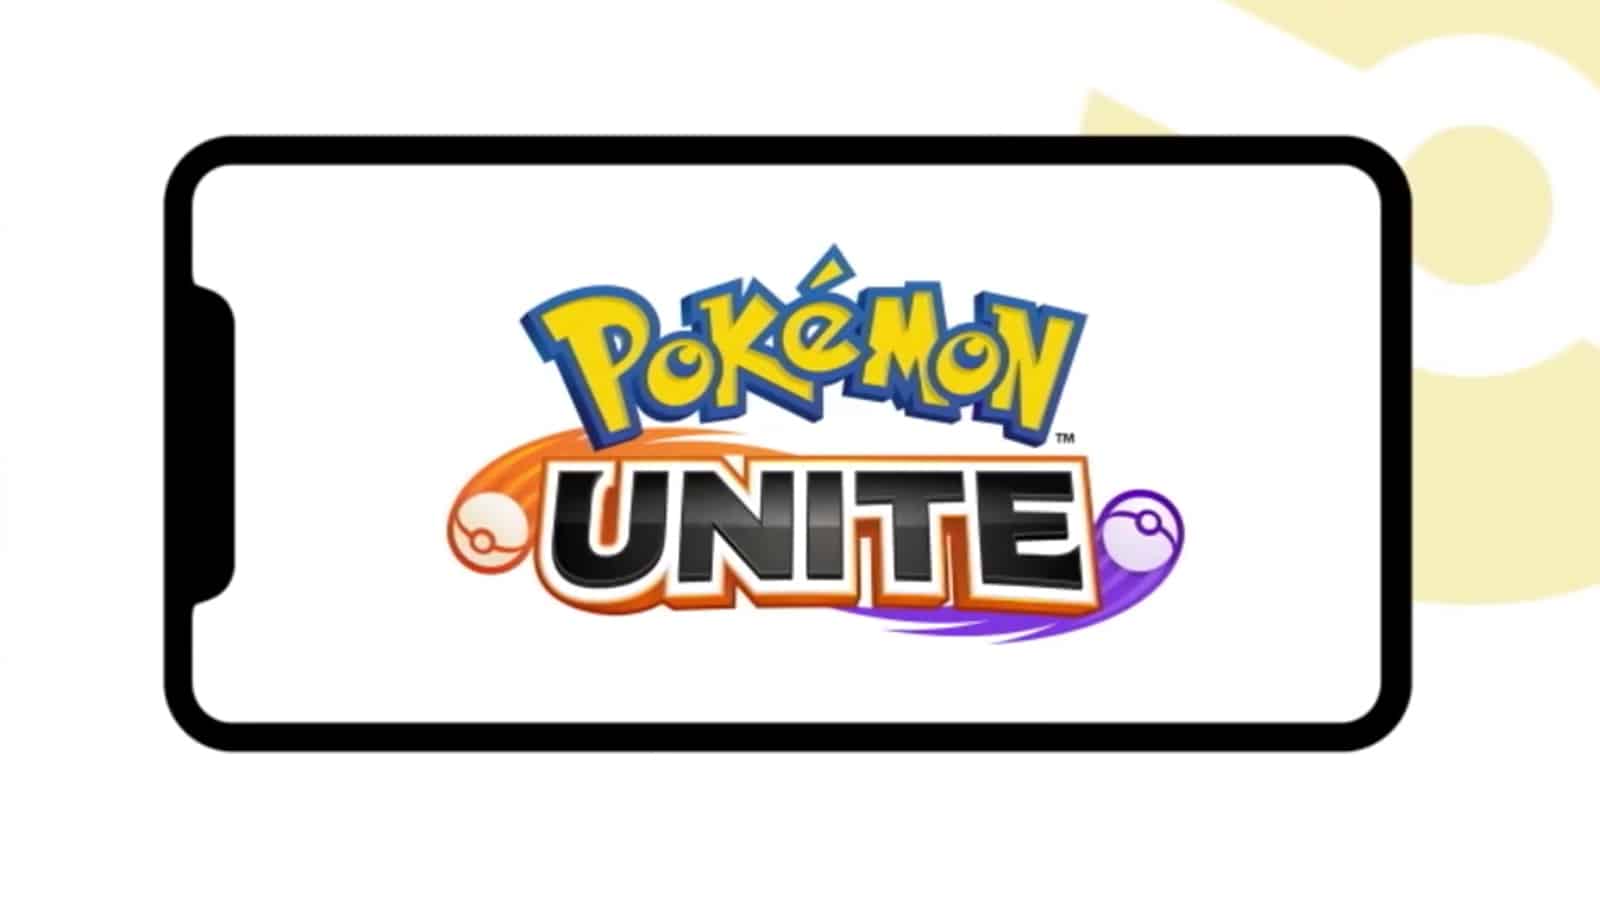 Pokemon Unite mobile